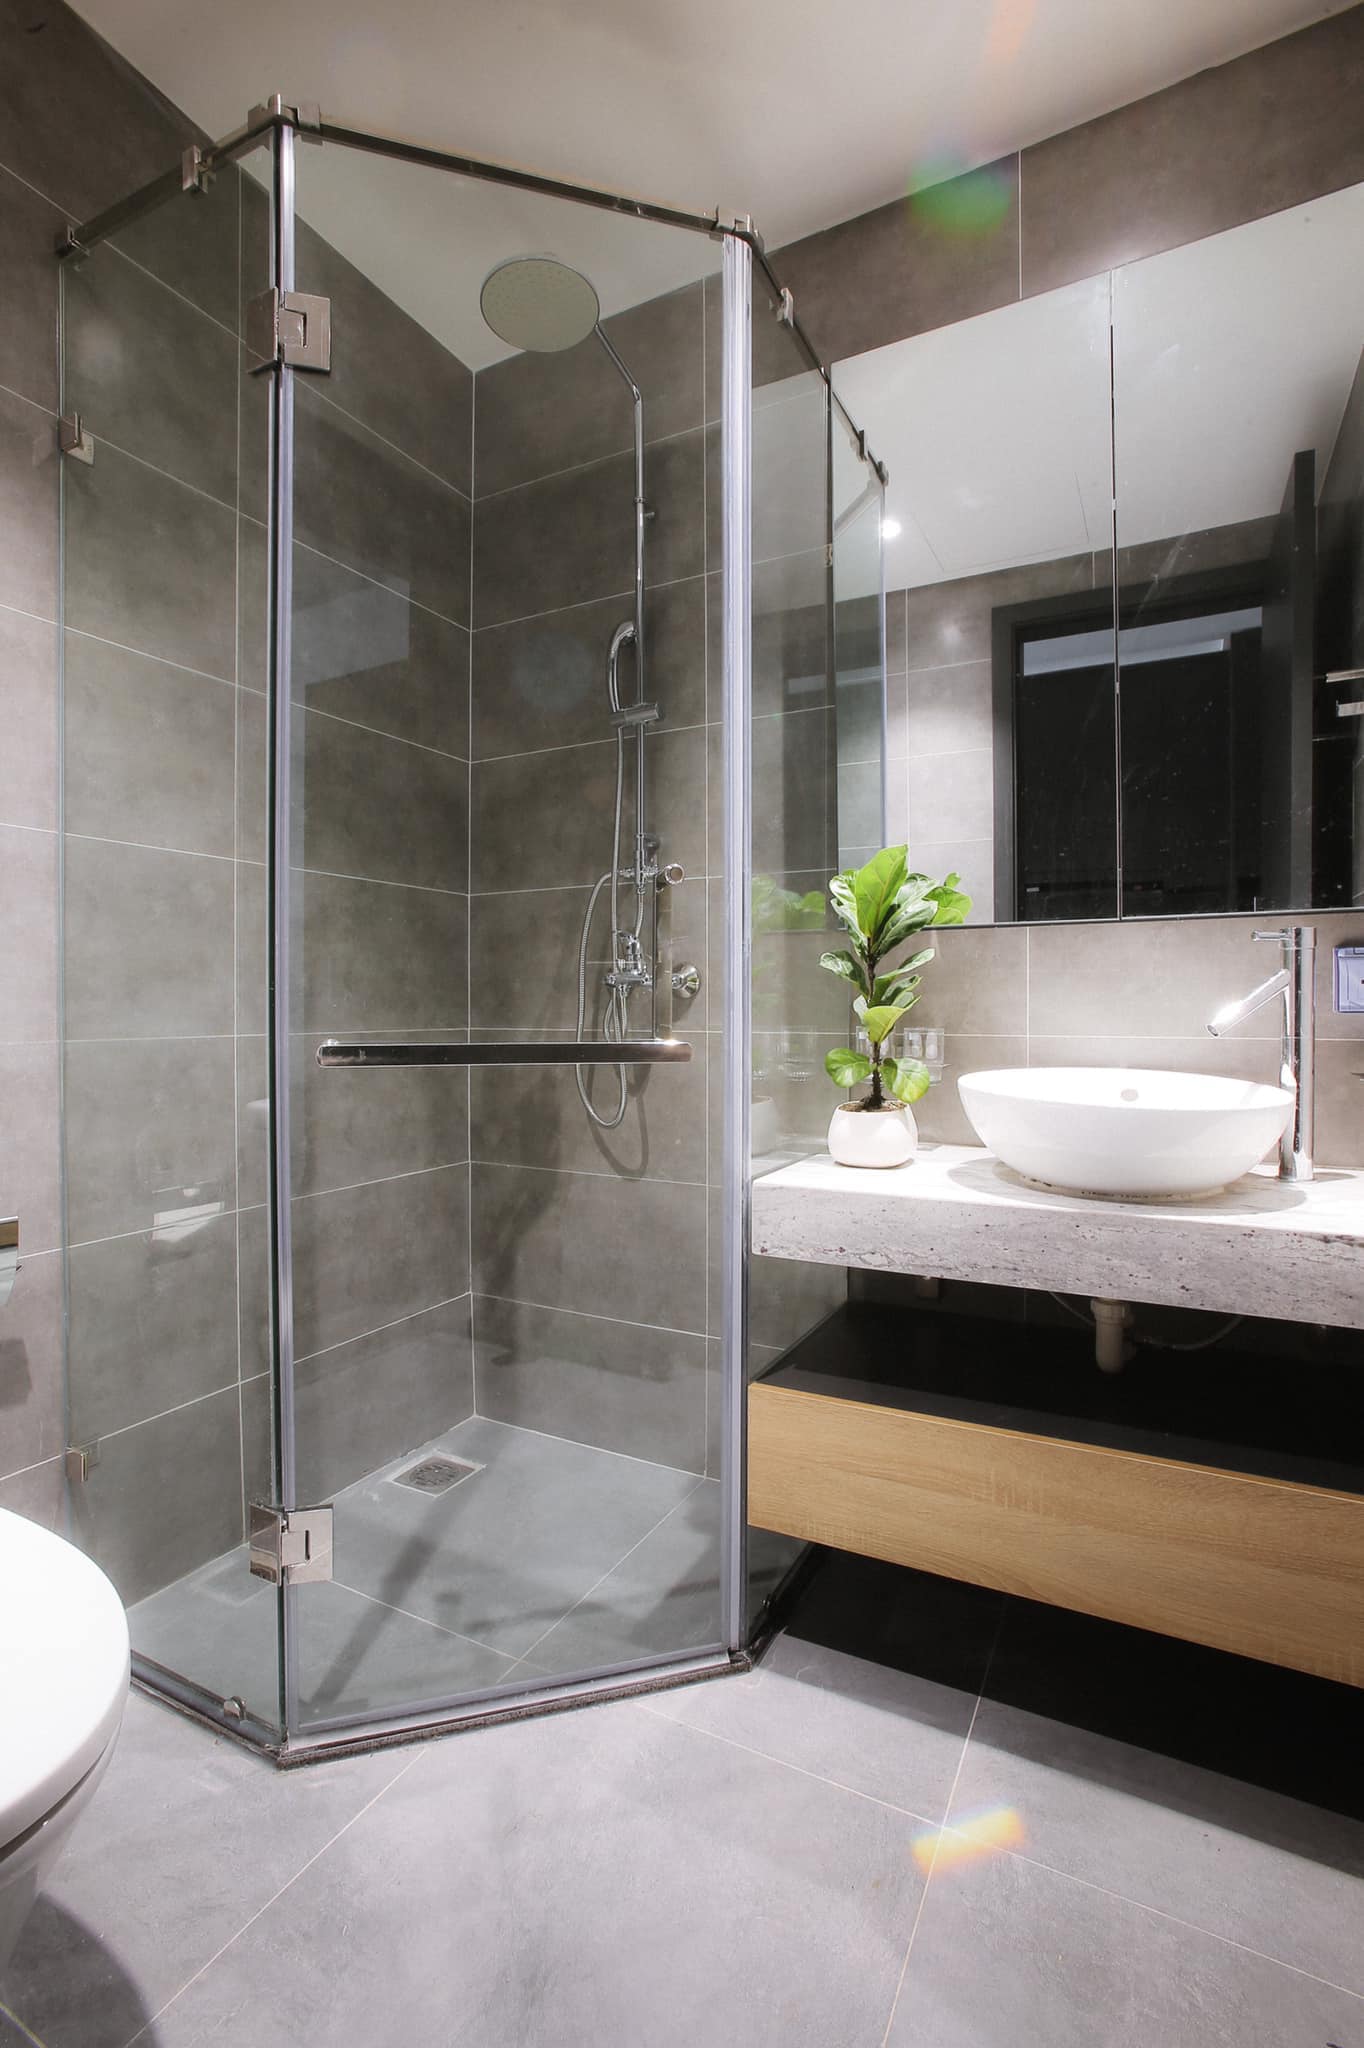 Nhà tắm nhỏ nhưng phân khu thông minh với bồn tắm kính vừa sạch sẽ, vừa giúp cho không gian trở nên hiện đại và đẹp hơn rất nhiều.